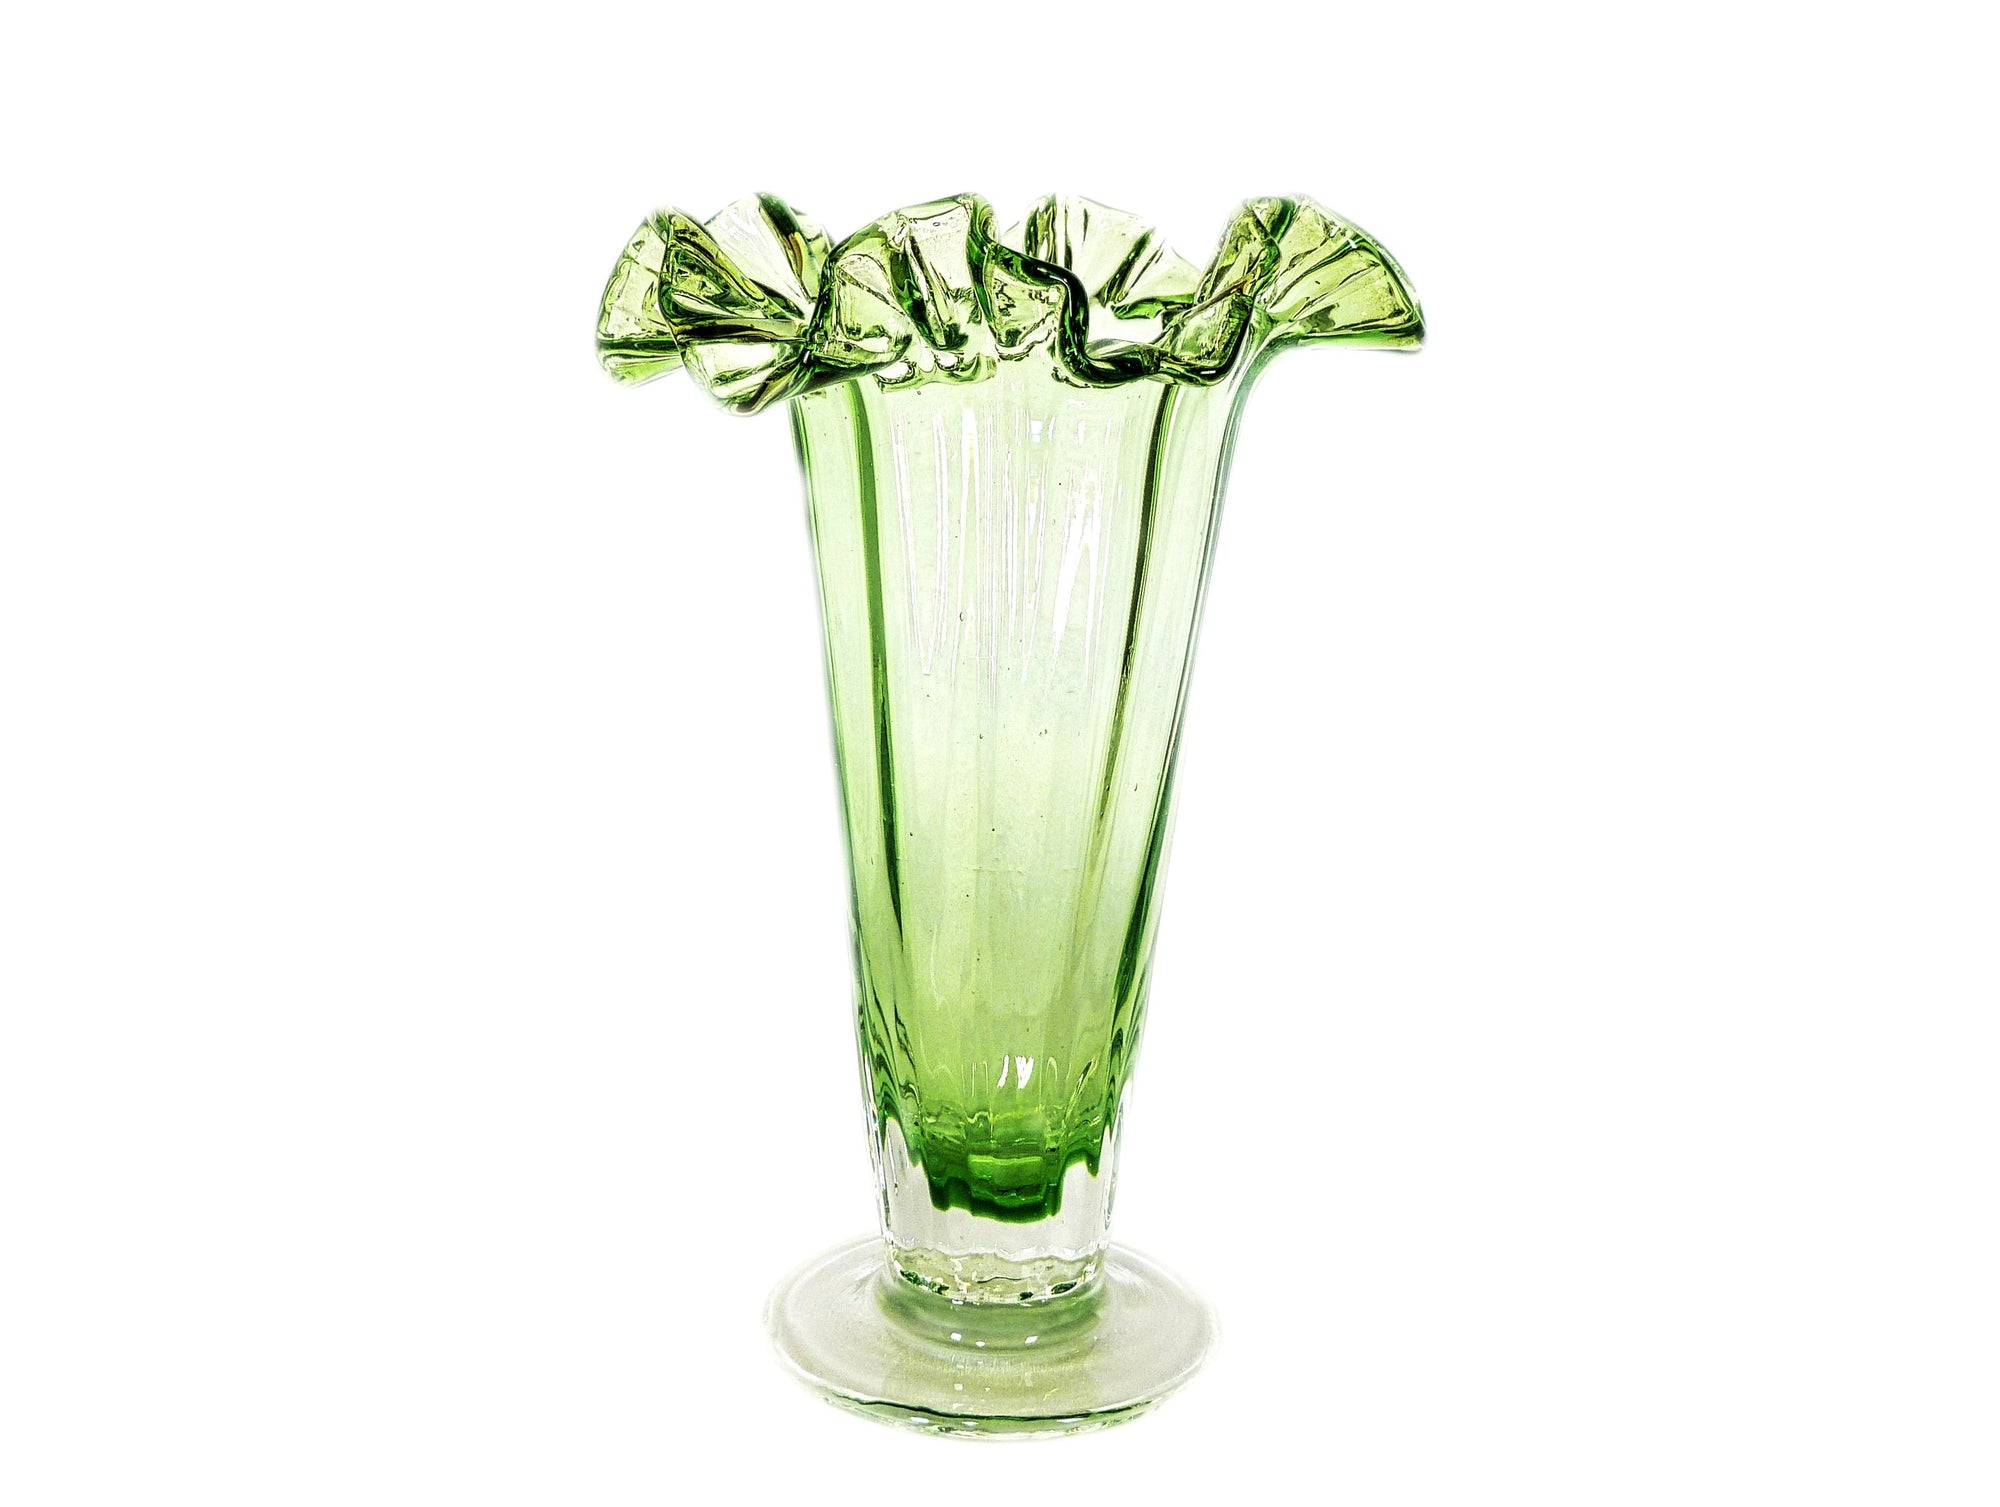 Green Glass Ruffled Top Vase, Tall and Elegant, Super Flower Vase